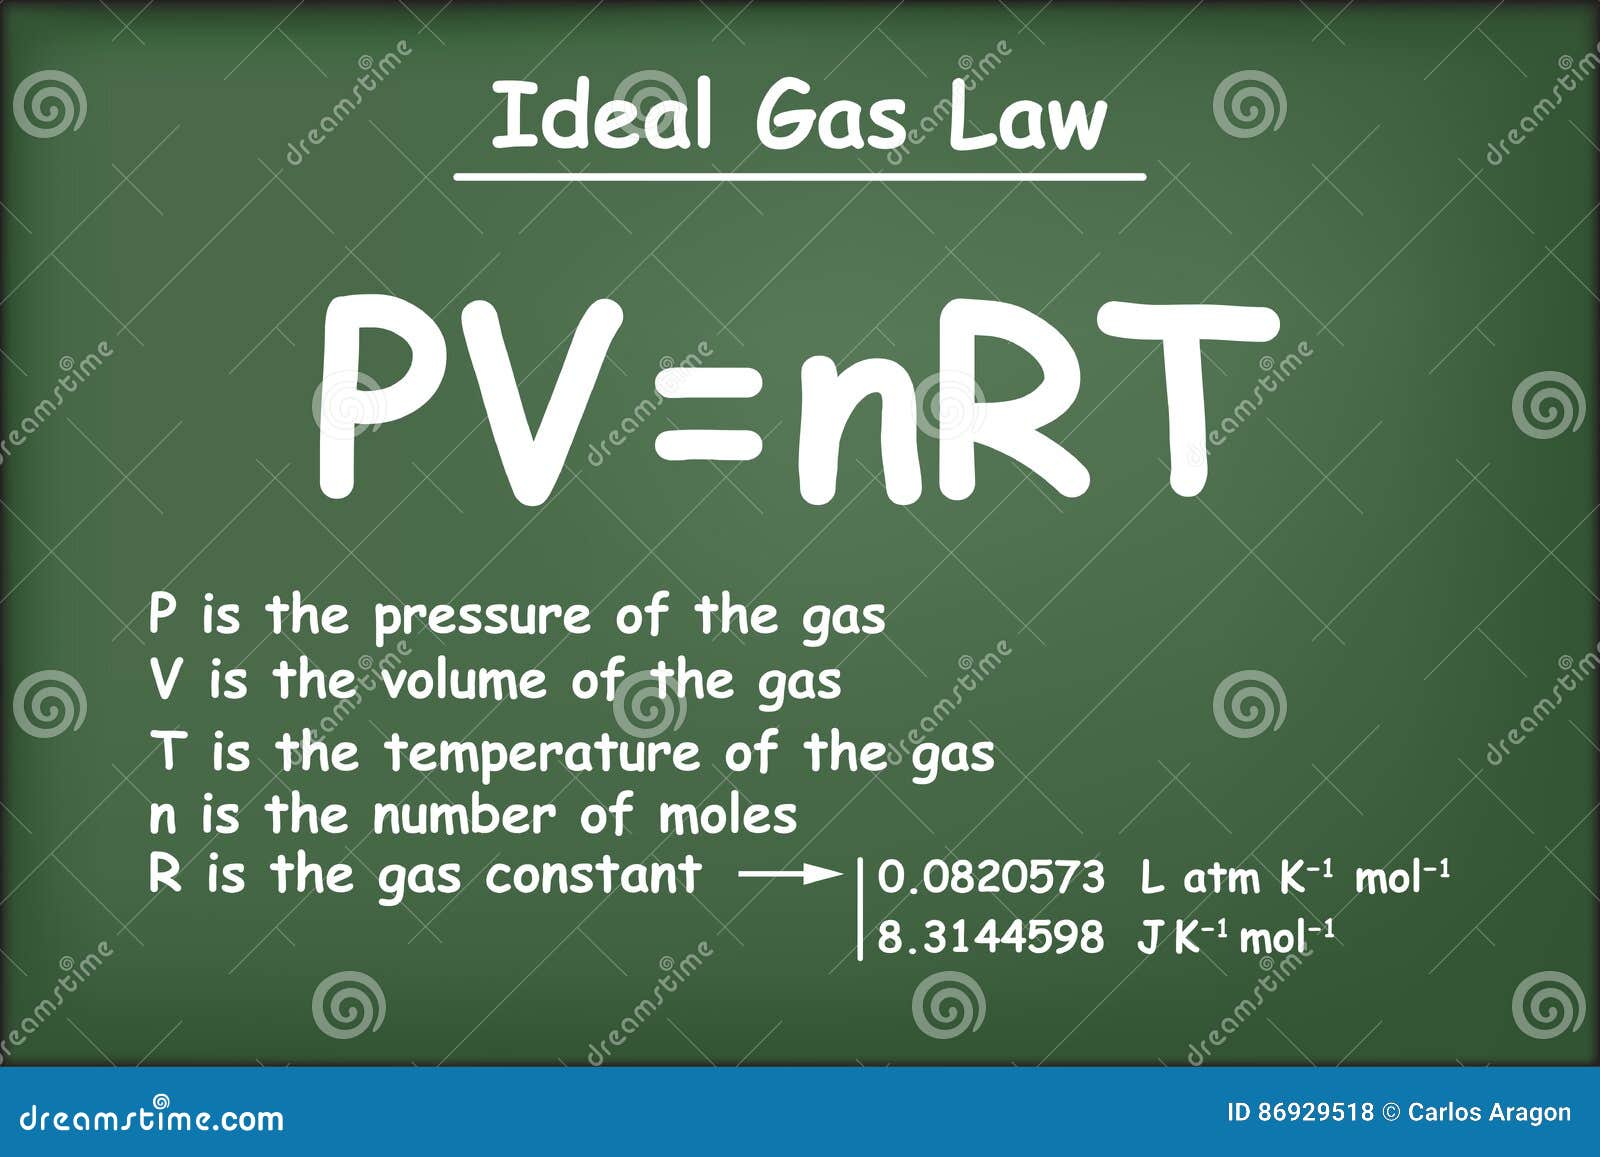 ideal gas law on green chalkboard